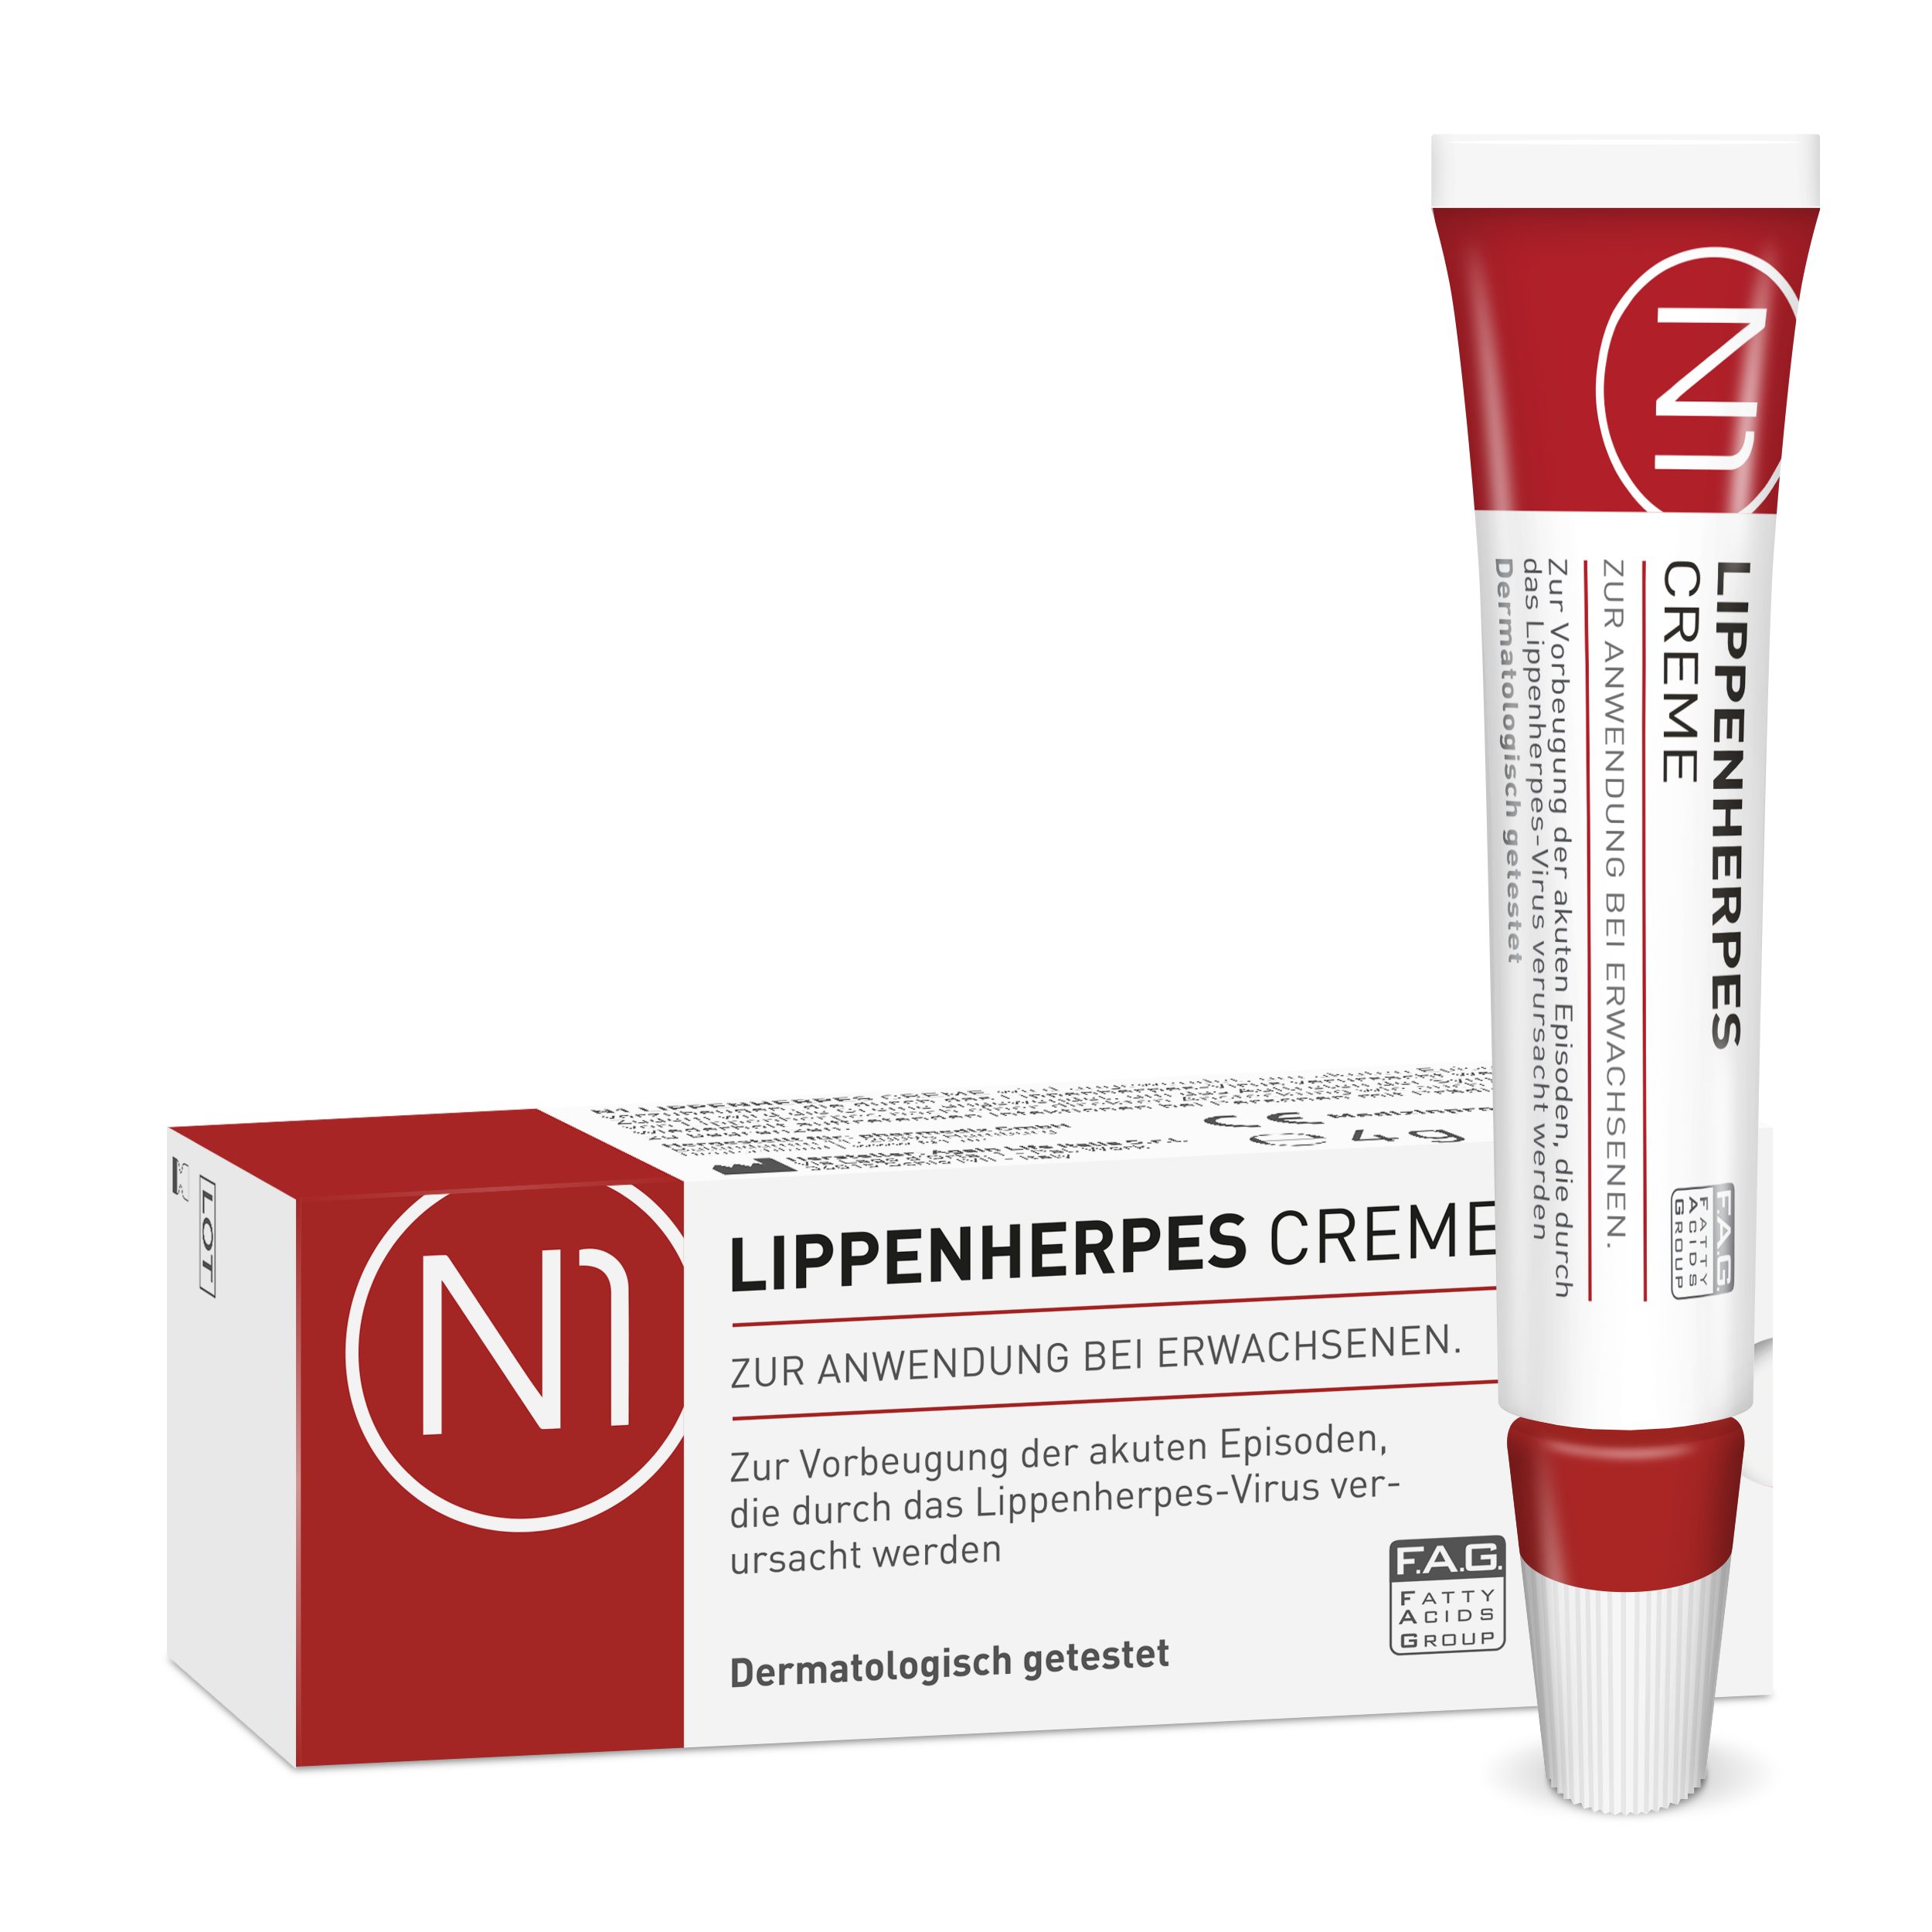 6 Lippencreme N1 haltbar geöffnet patentiert, Creme wirkt sofort, Healthcare Monate bei Lippenherpes, Herpes